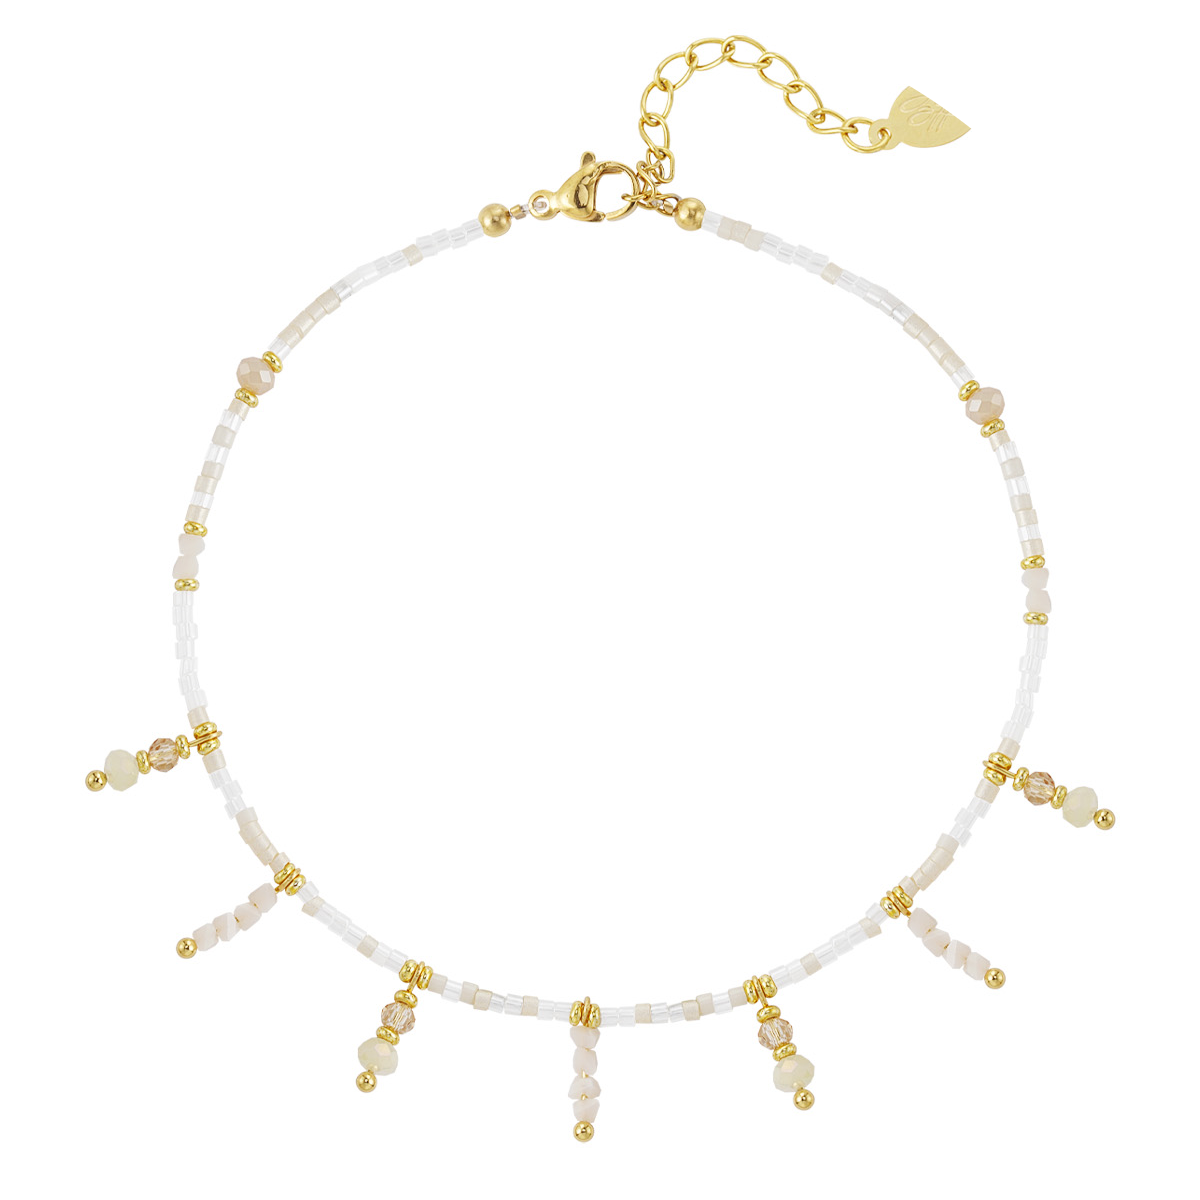 Edelstahl - Fusskette mit Perlenanhängern - weiß/gold